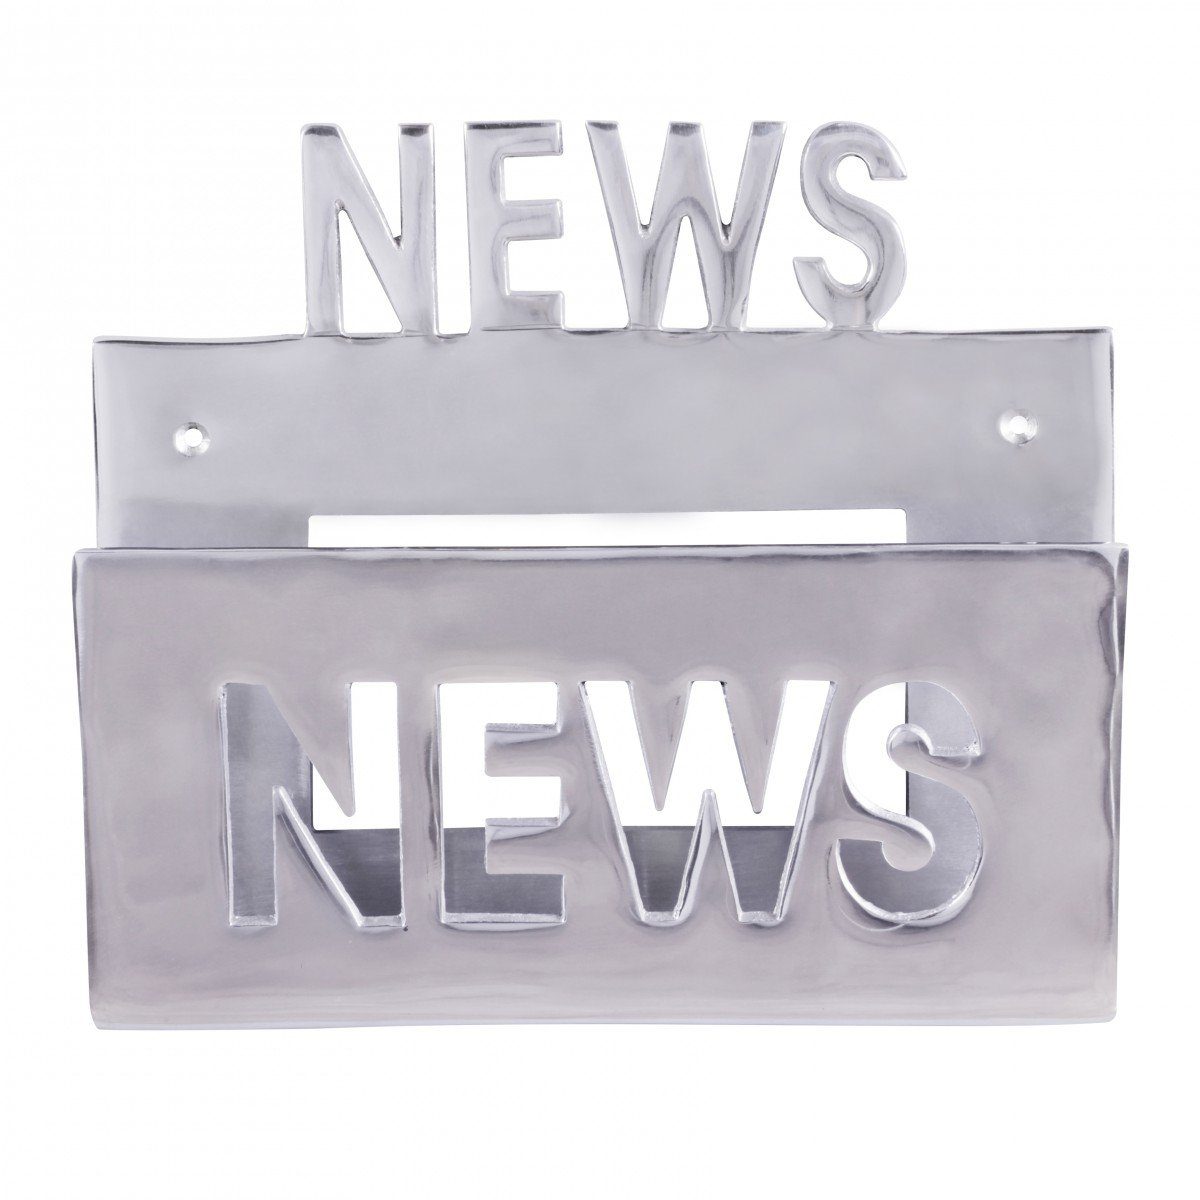 News Zeitschriftenhalter aus für Farbe möbelando Deko Zeitungshalter Dekofigur Aluminium Silbe Prospekthalter, Prospekthalter Deko die Wand Design